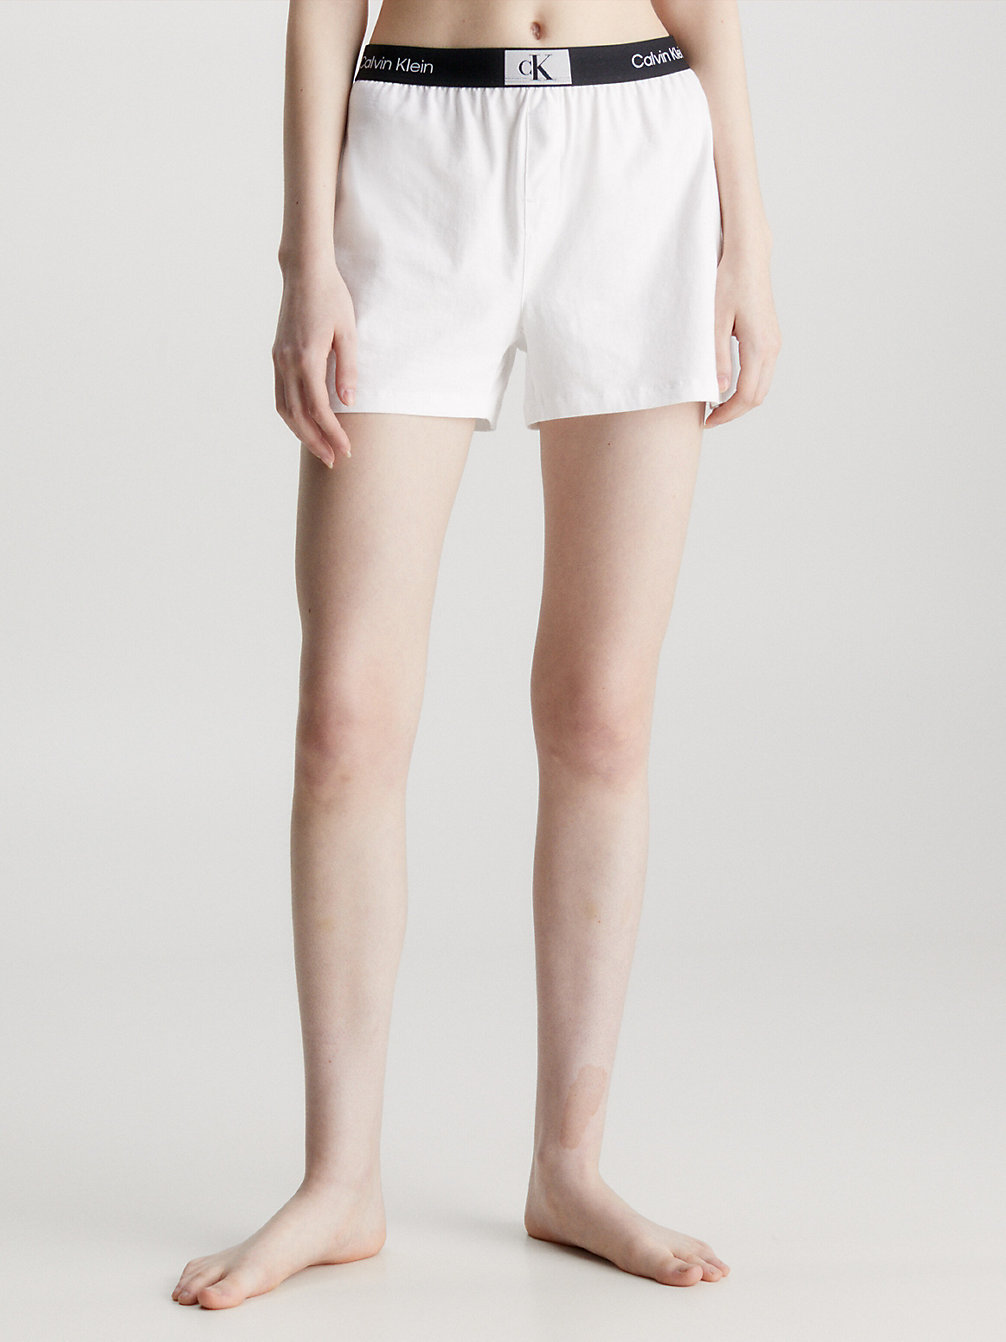 Pantaloncini Corti Pigiama - Ck96 > WHITE > undefined donna > Calvin Klein